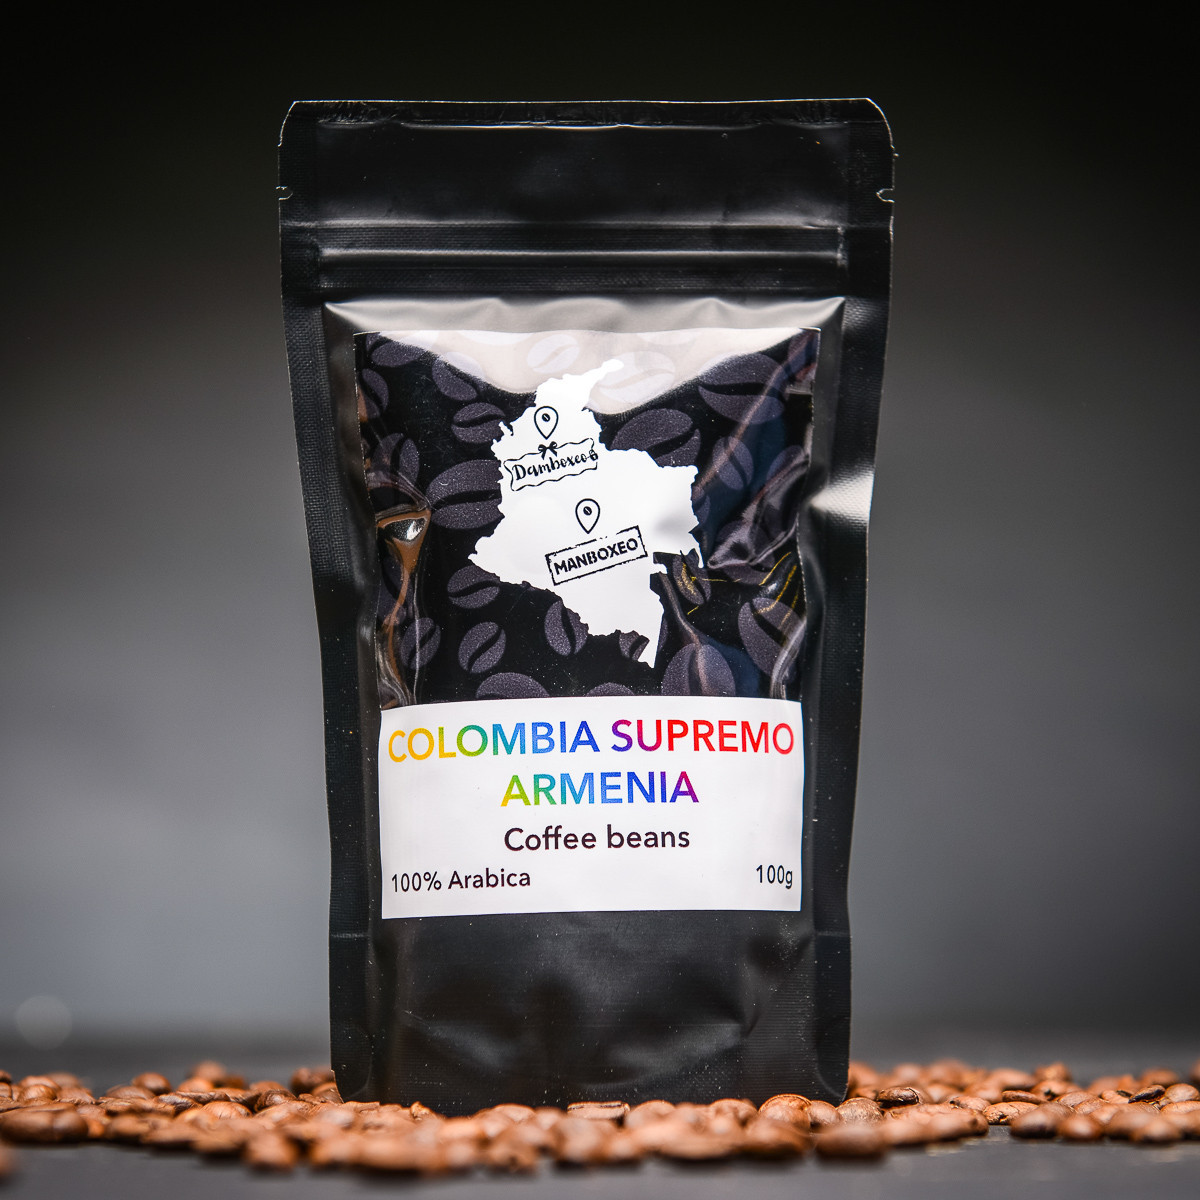 Káva Colombia Supremo Armenia 100g - 100% Arabica.jpg